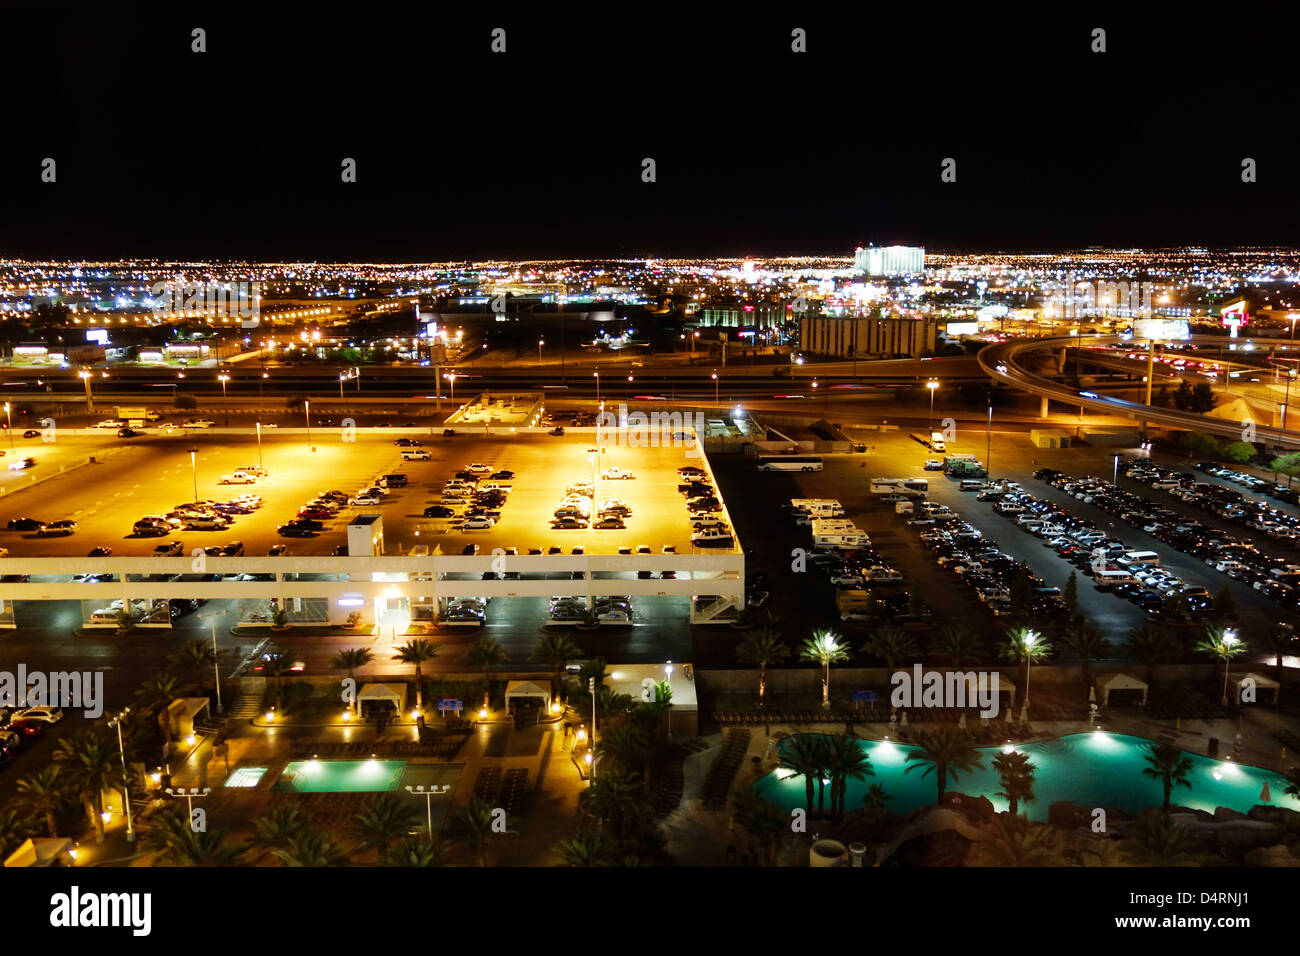 Vista posteriore di Rural Las Vegas di notte visto dall'Excalibur con parcheggi e piscine nella parte anteriore Foto Stock